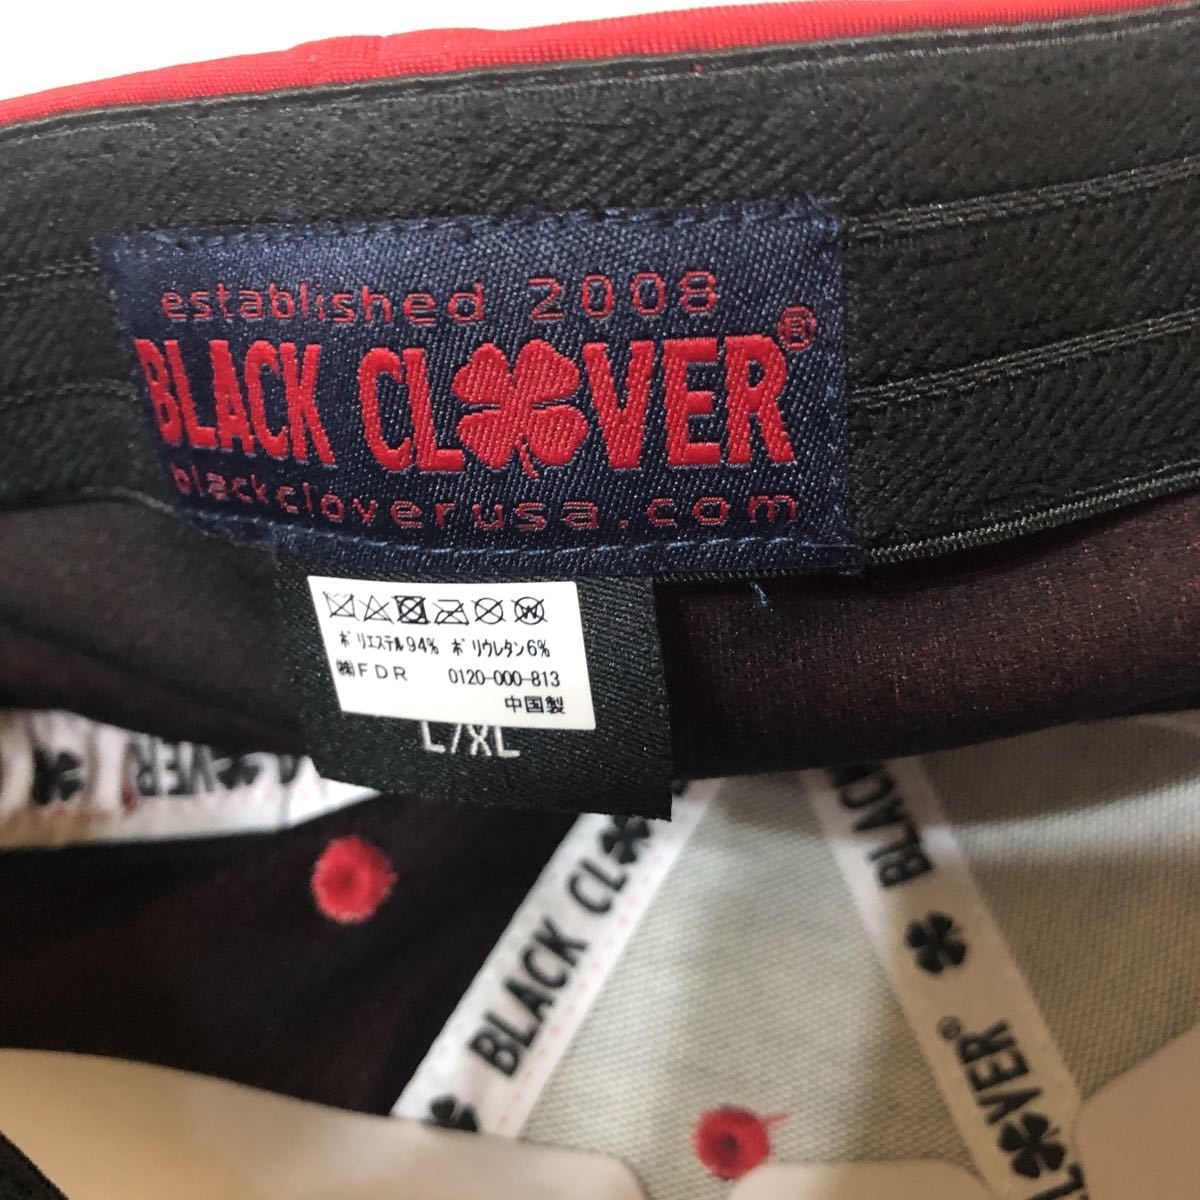  черный clover Black Clover шляпа мужской колпак PREMIUM CLOVER 7 L/XL premium clover темно-синий алый 